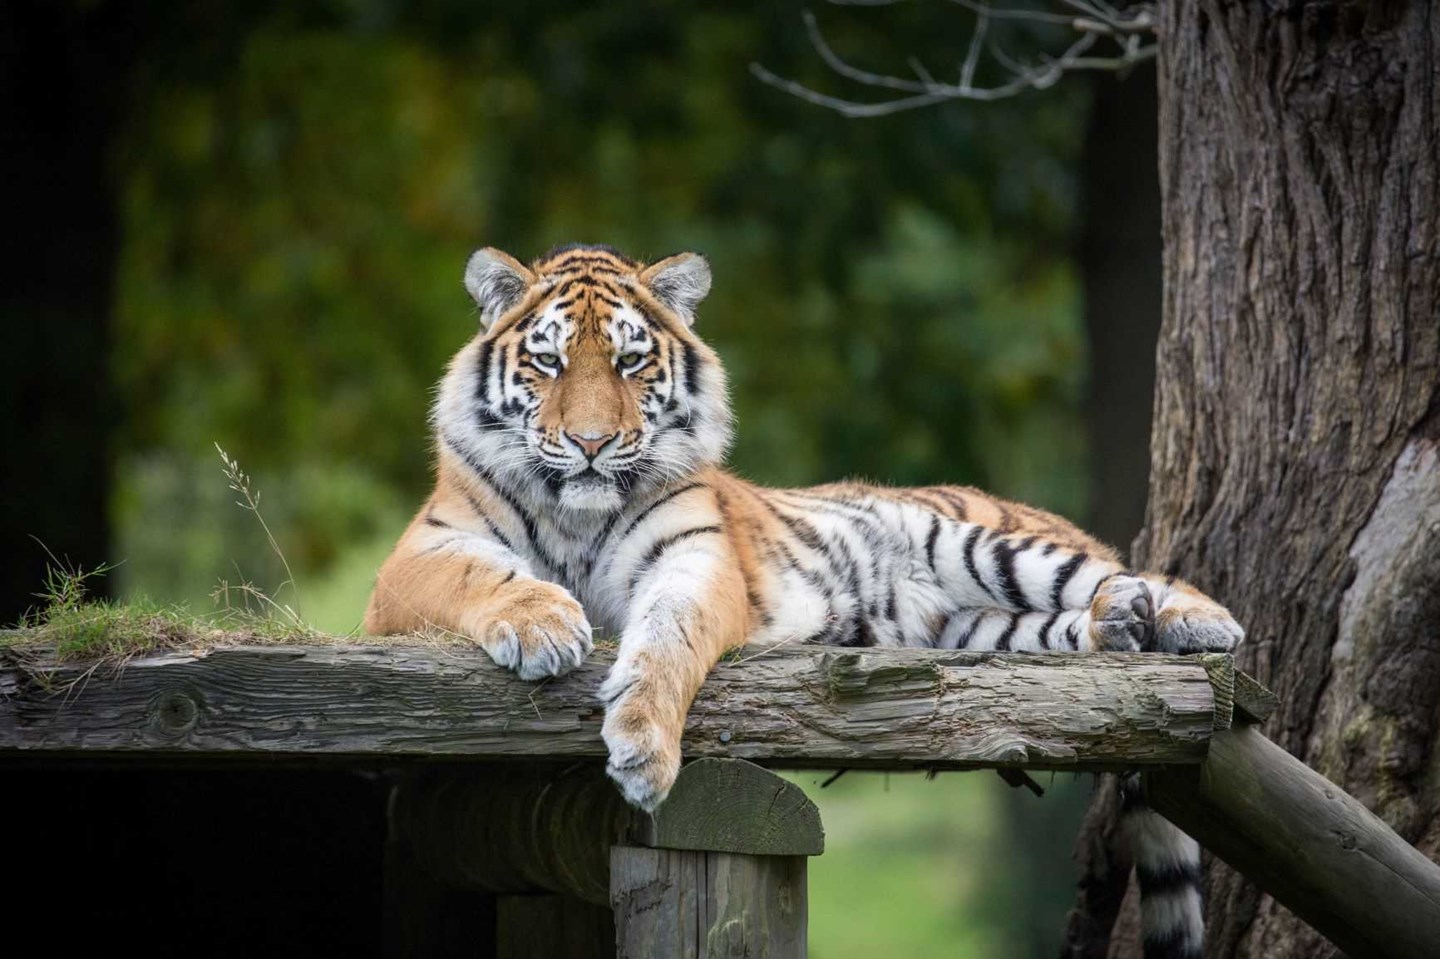 Milashki the Amur Tiger rests on wooden platform